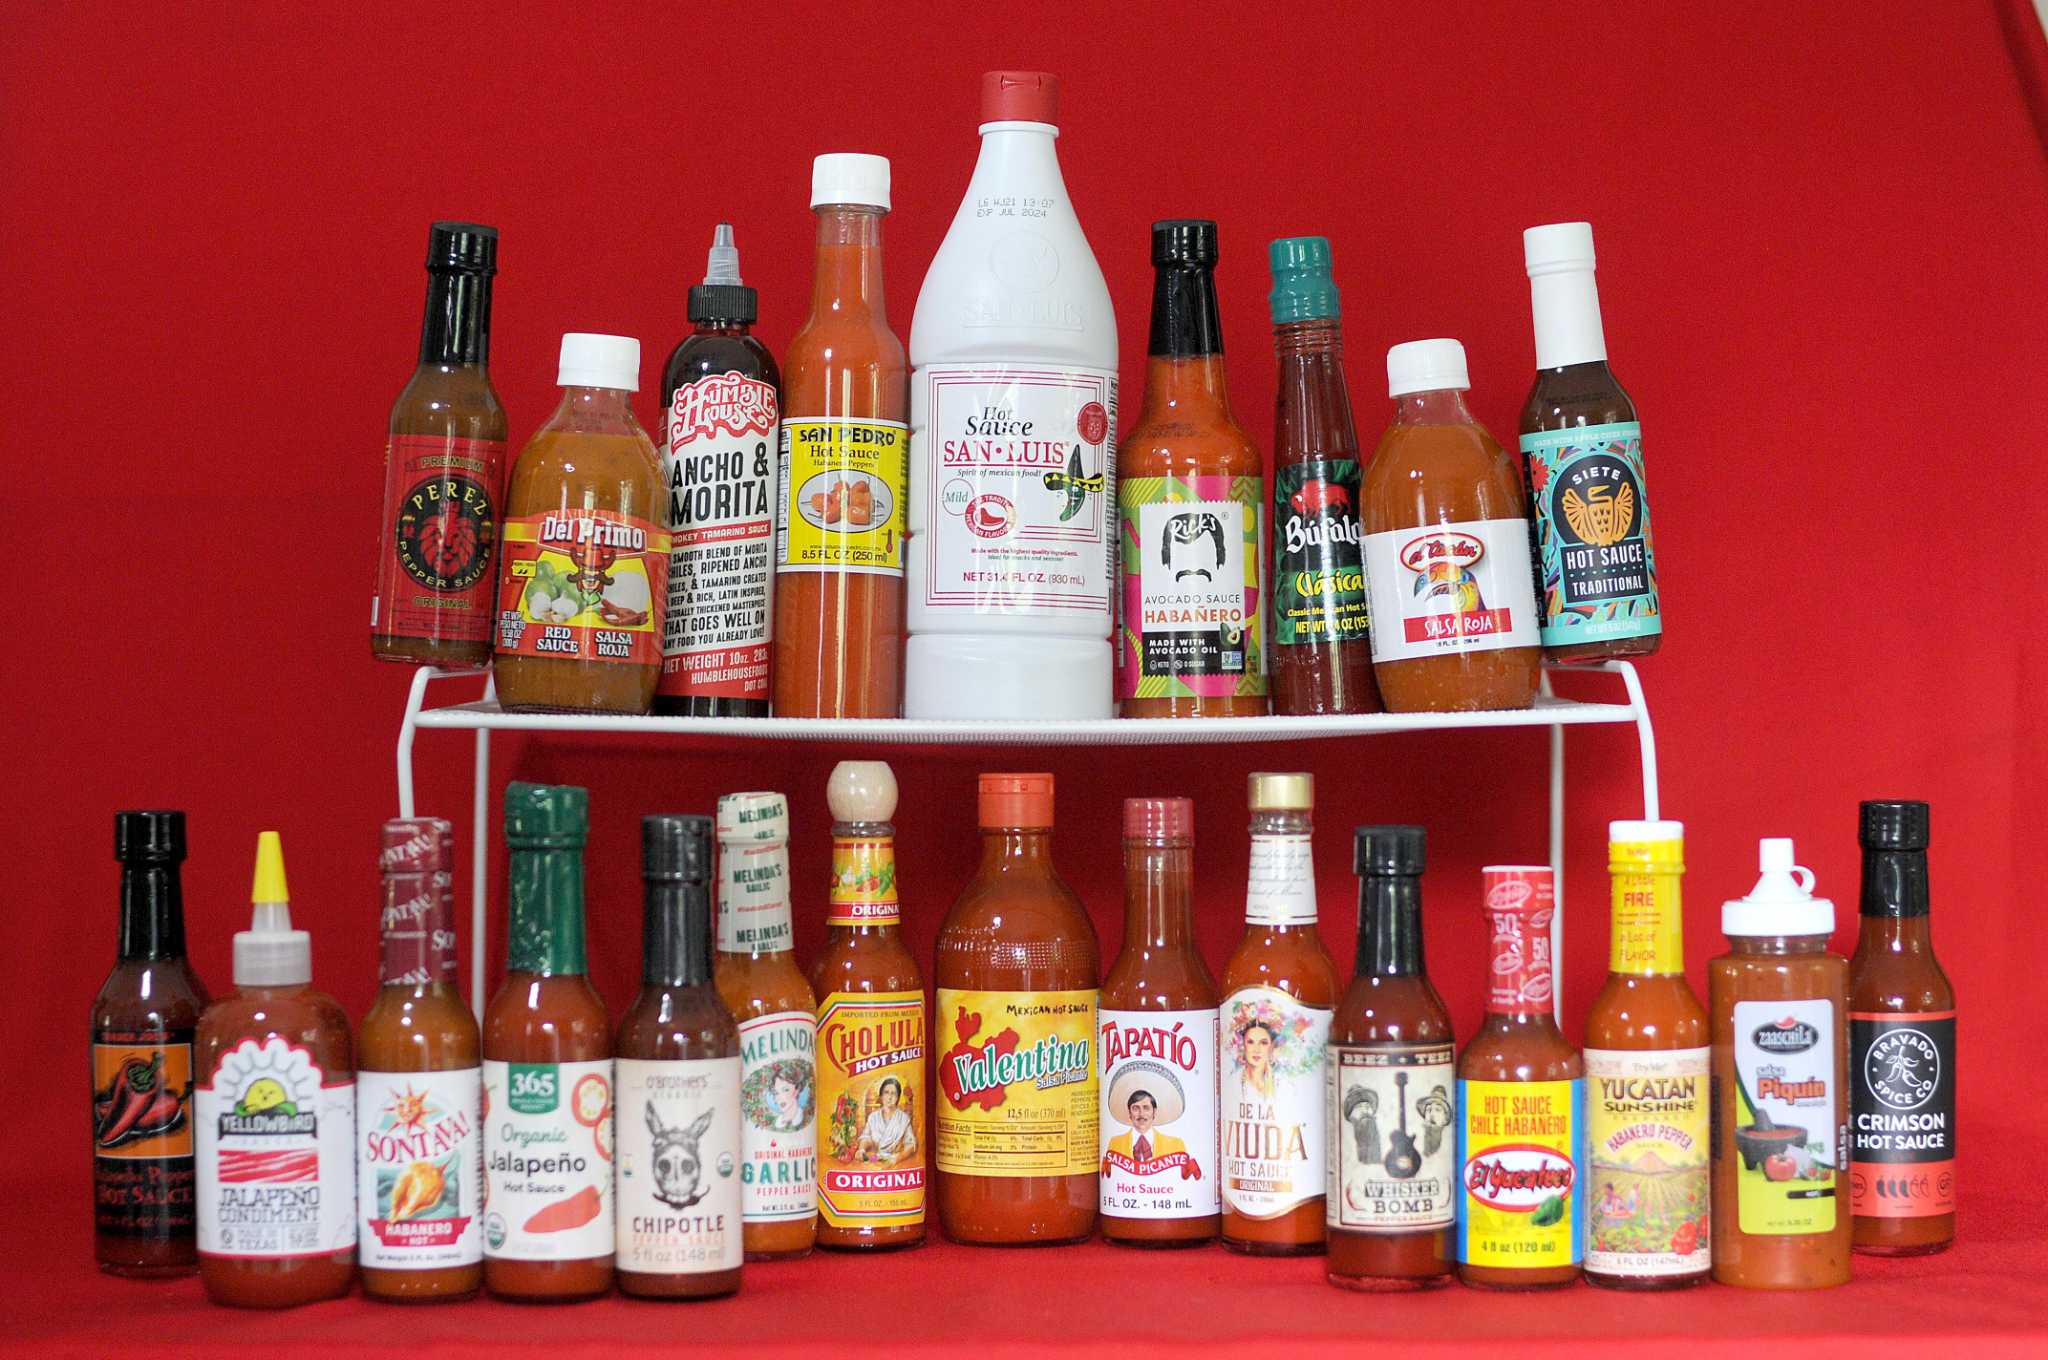 hot sauce brands